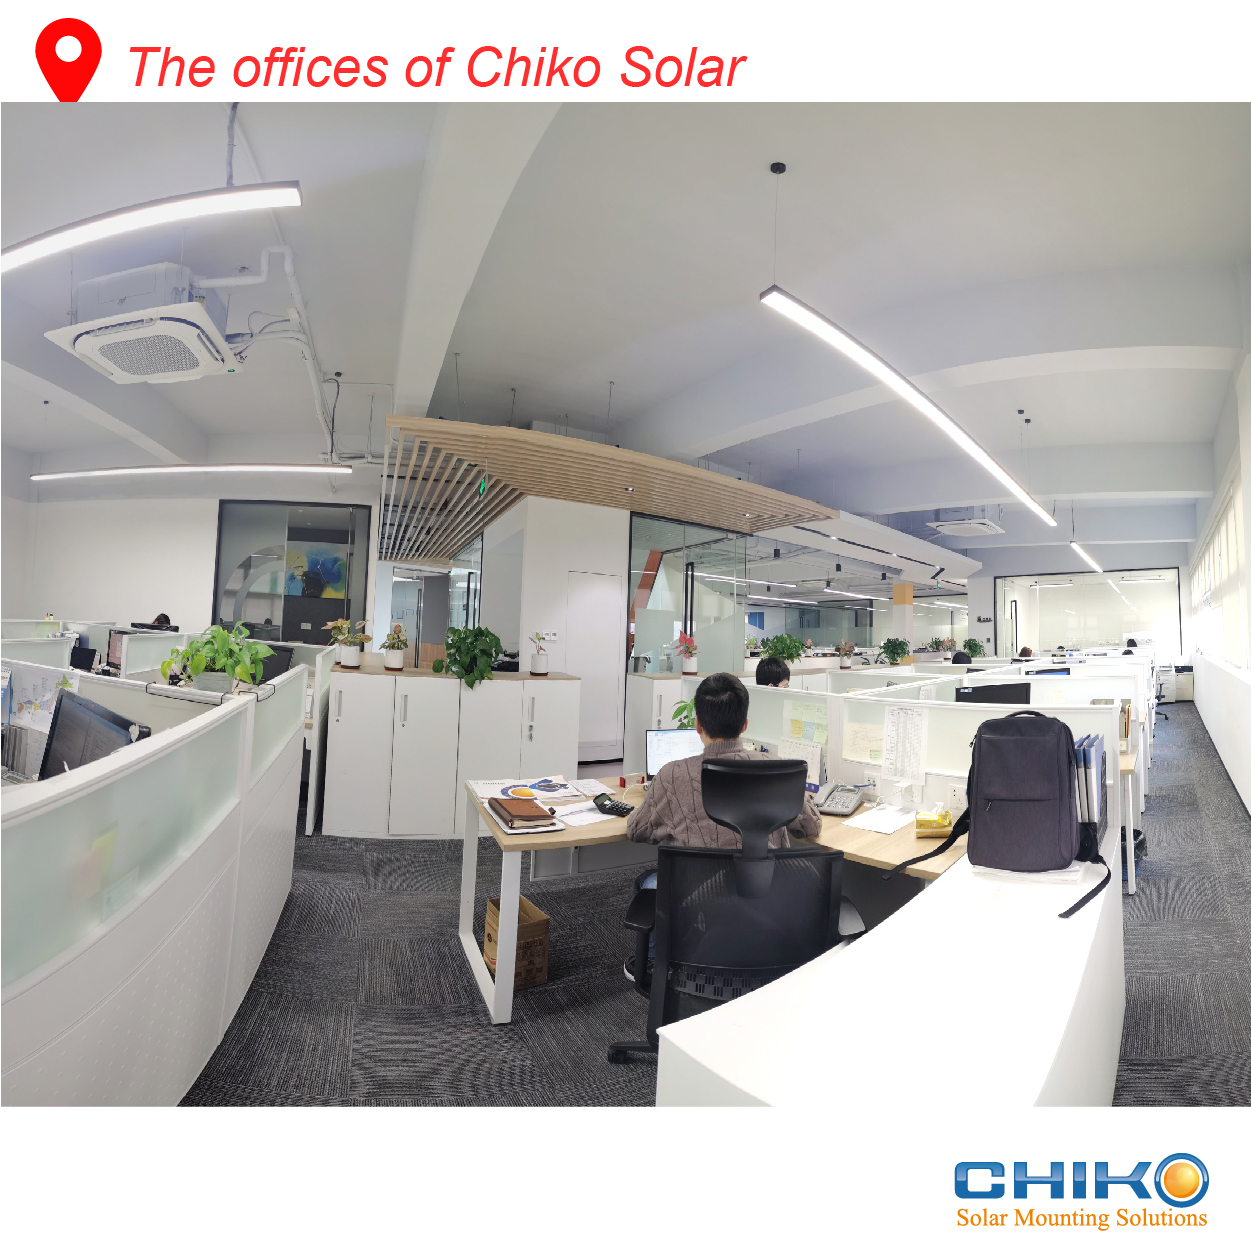 The solar energy enterprise under the new trend - CHIKO Solar